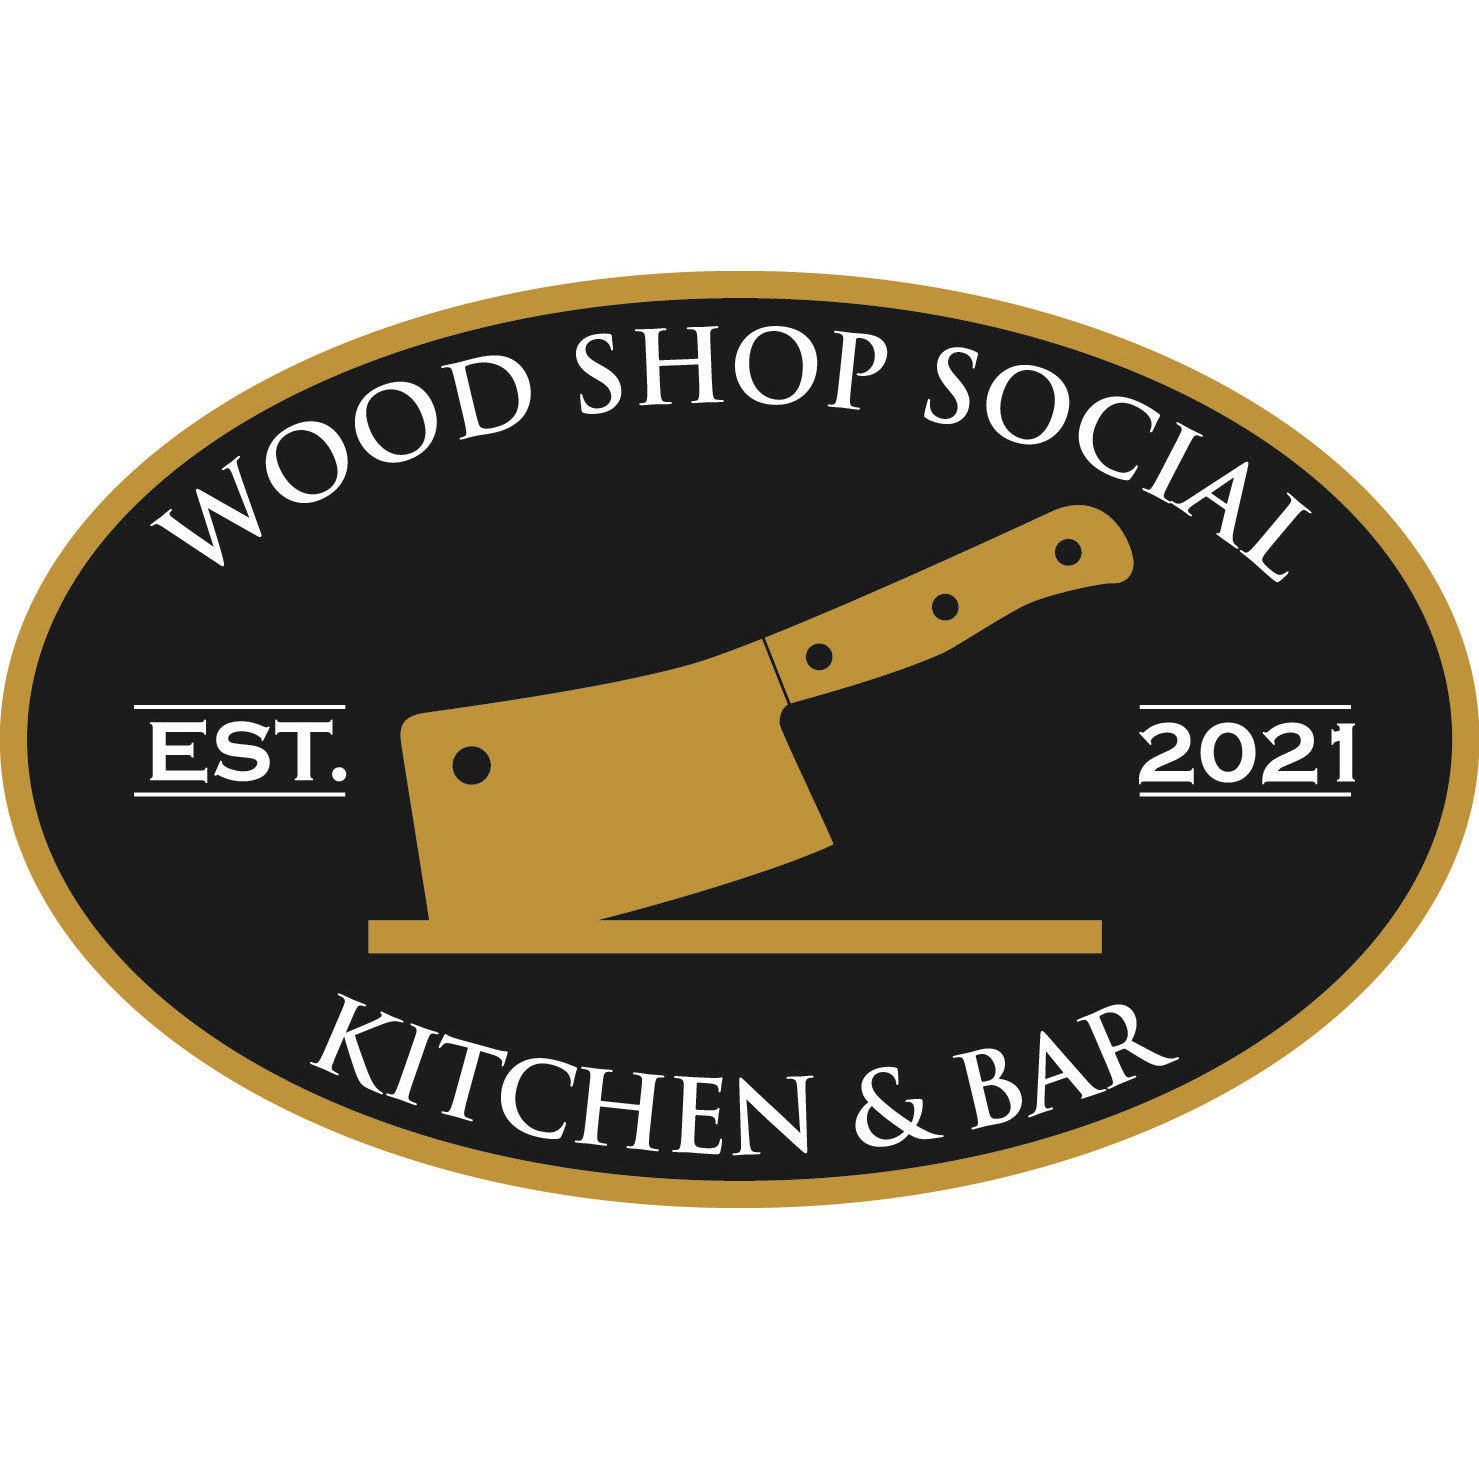 Wood Shop Social